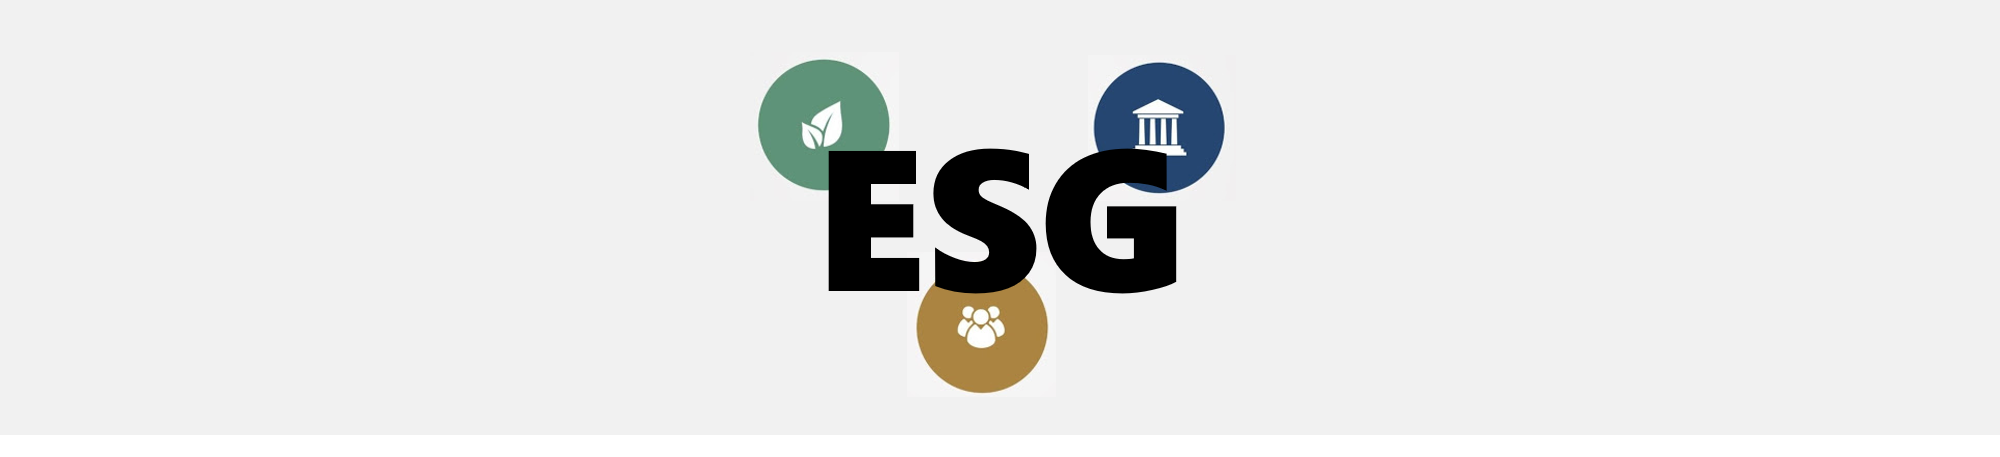 O que significa a sigla ESG